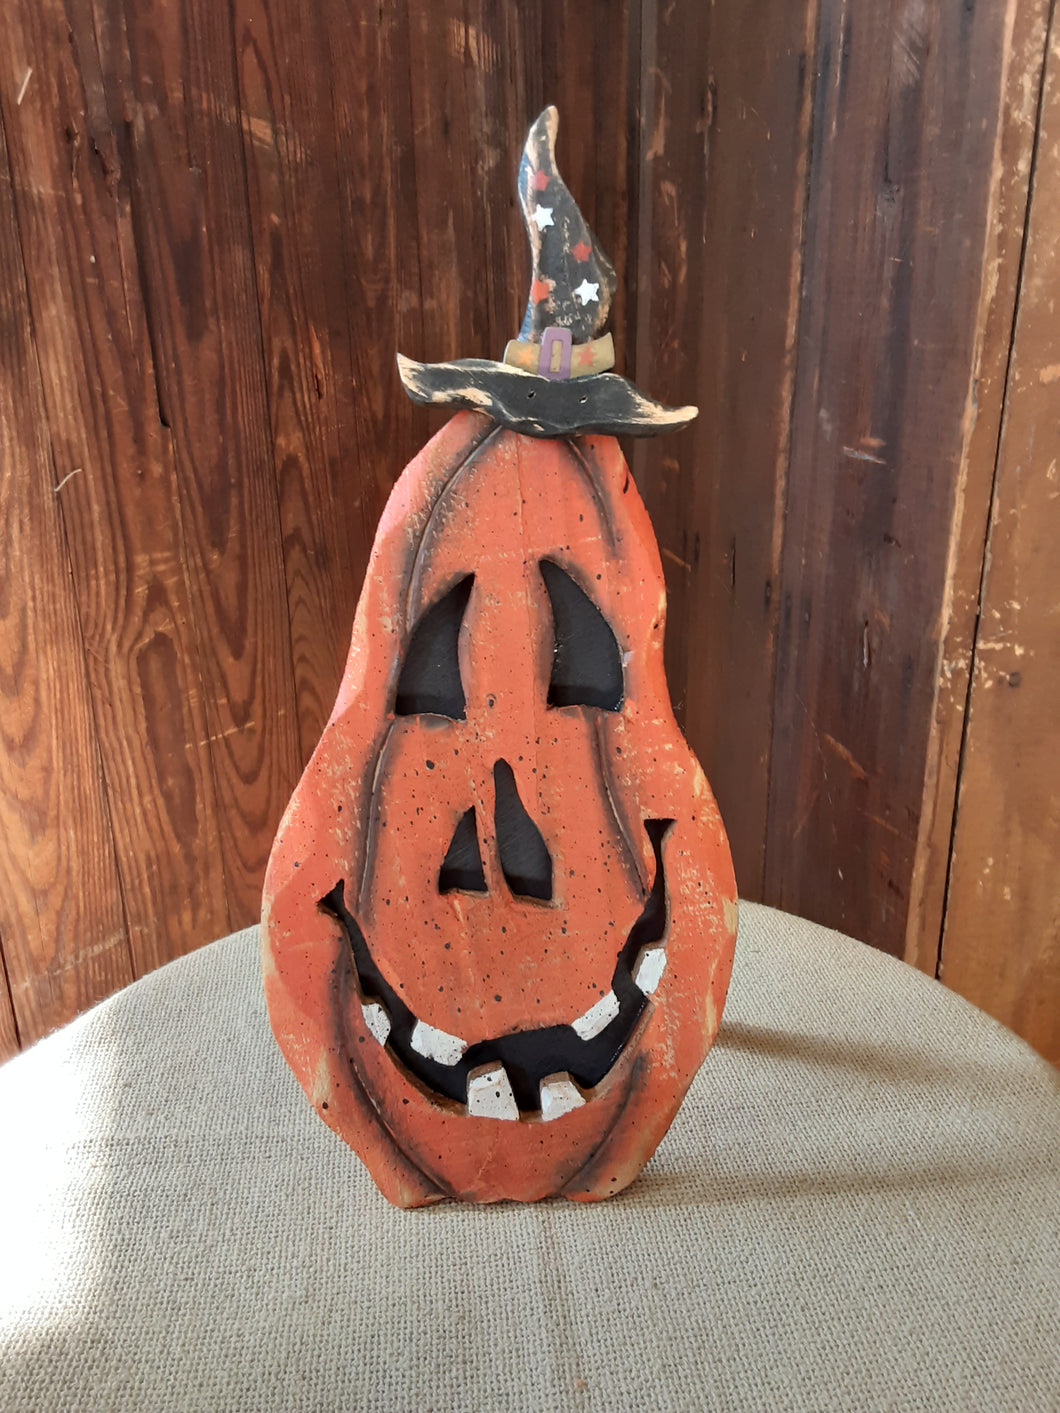 Wooden Carved Jack-o-lantern